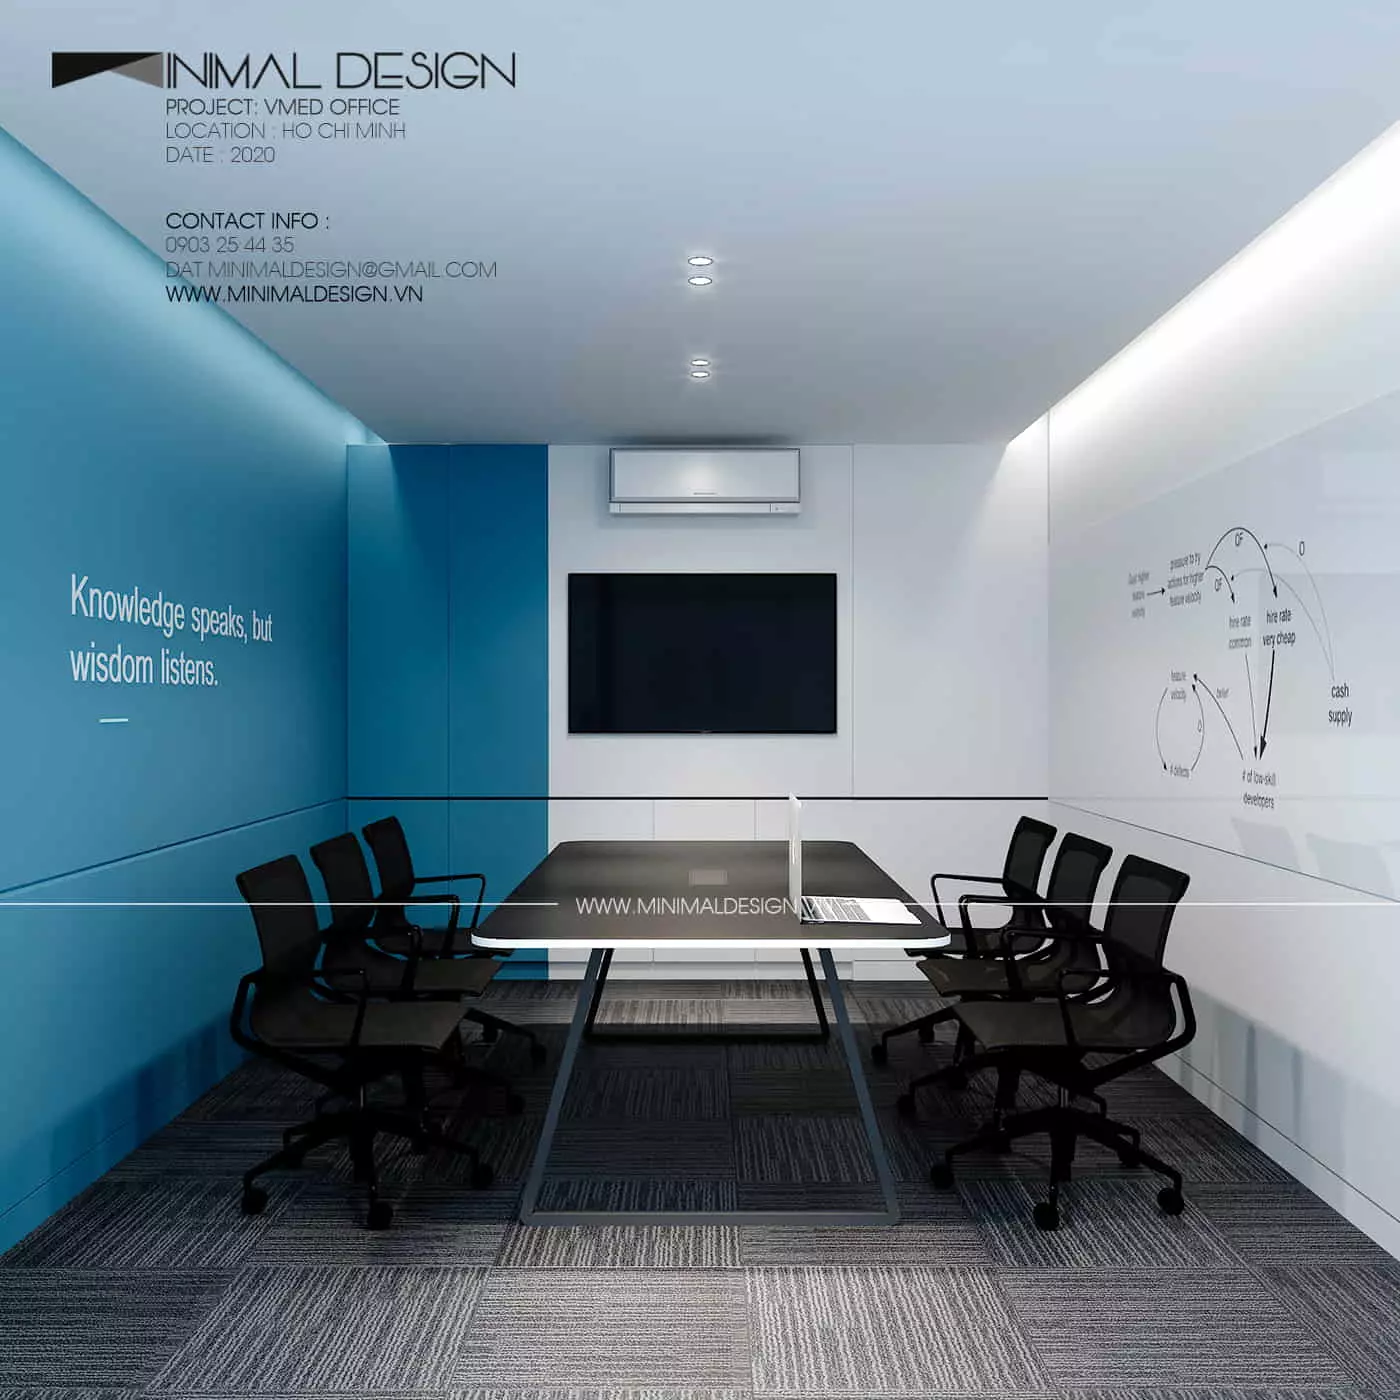 Thiết kế văn phòng tối giản thường có hai loại không gian chủ yếu hay xuất hiện khi thiết kế đó chính là không gian mở và không gian đóng